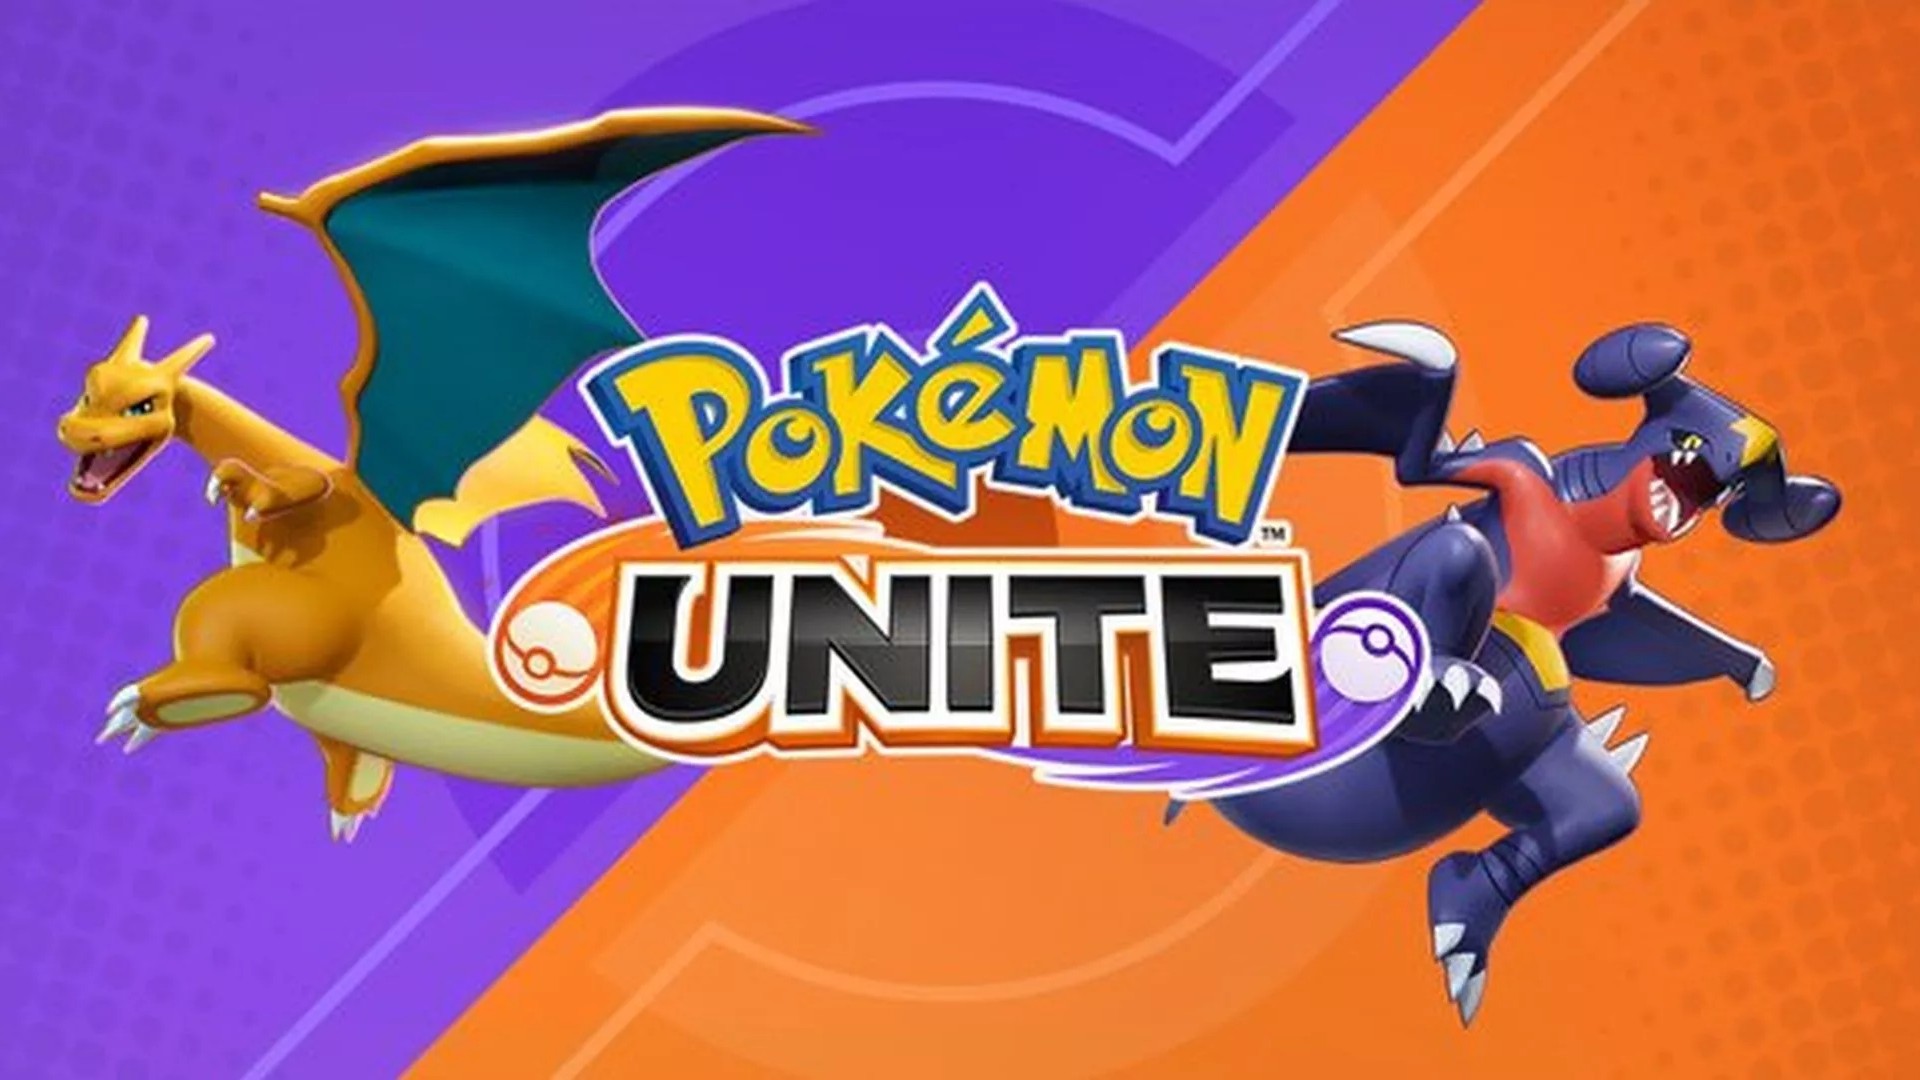 Novos jogos de Pokémon chegam com outros personagens iniciais